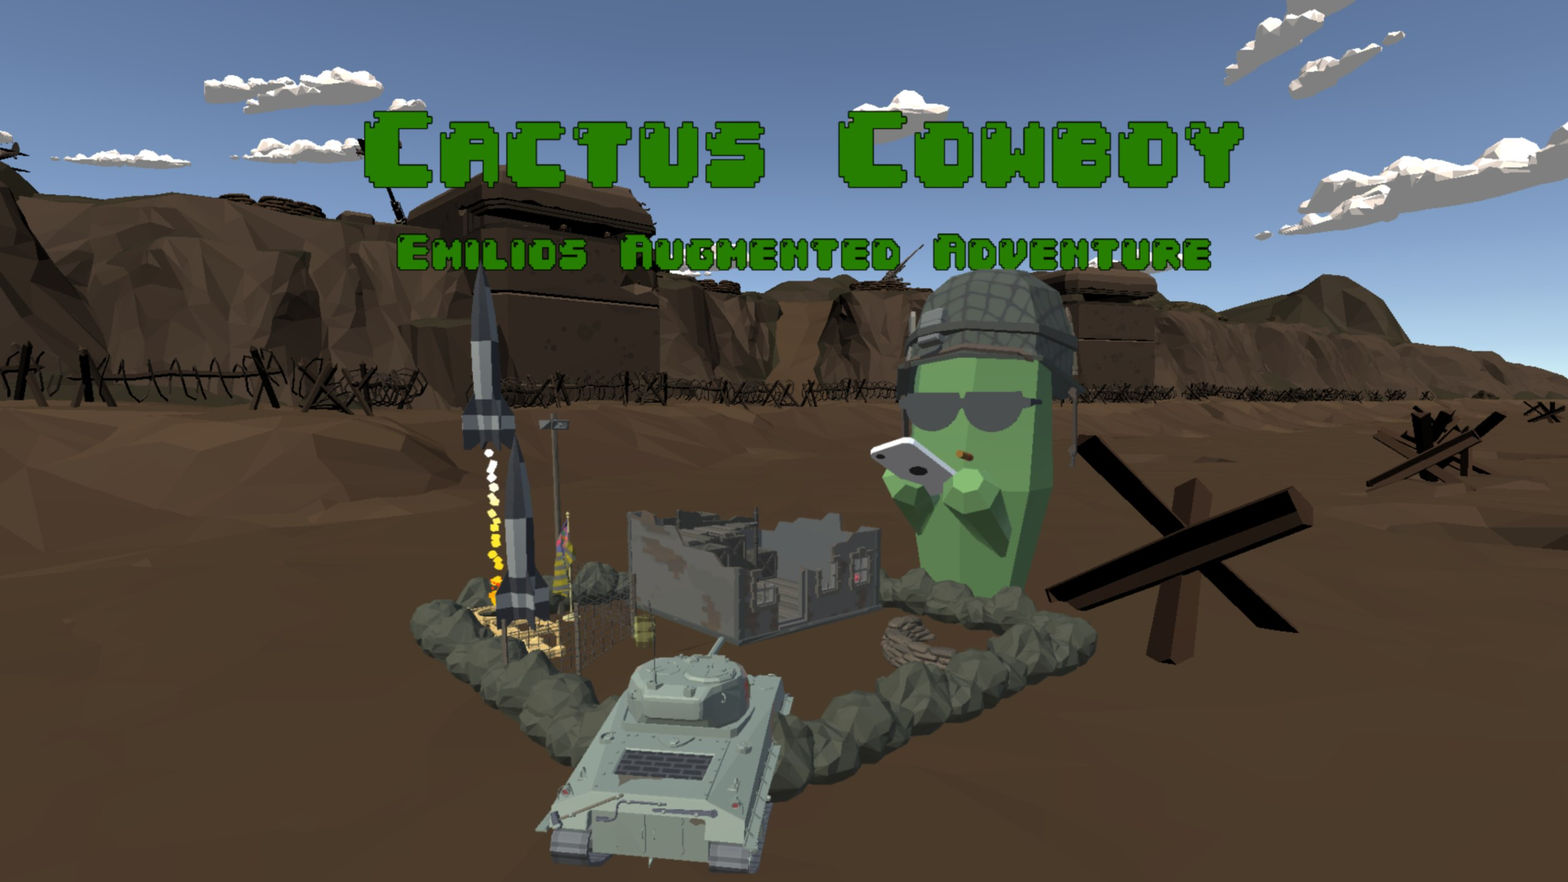 Cactus Cowboy - Emilios Adventure